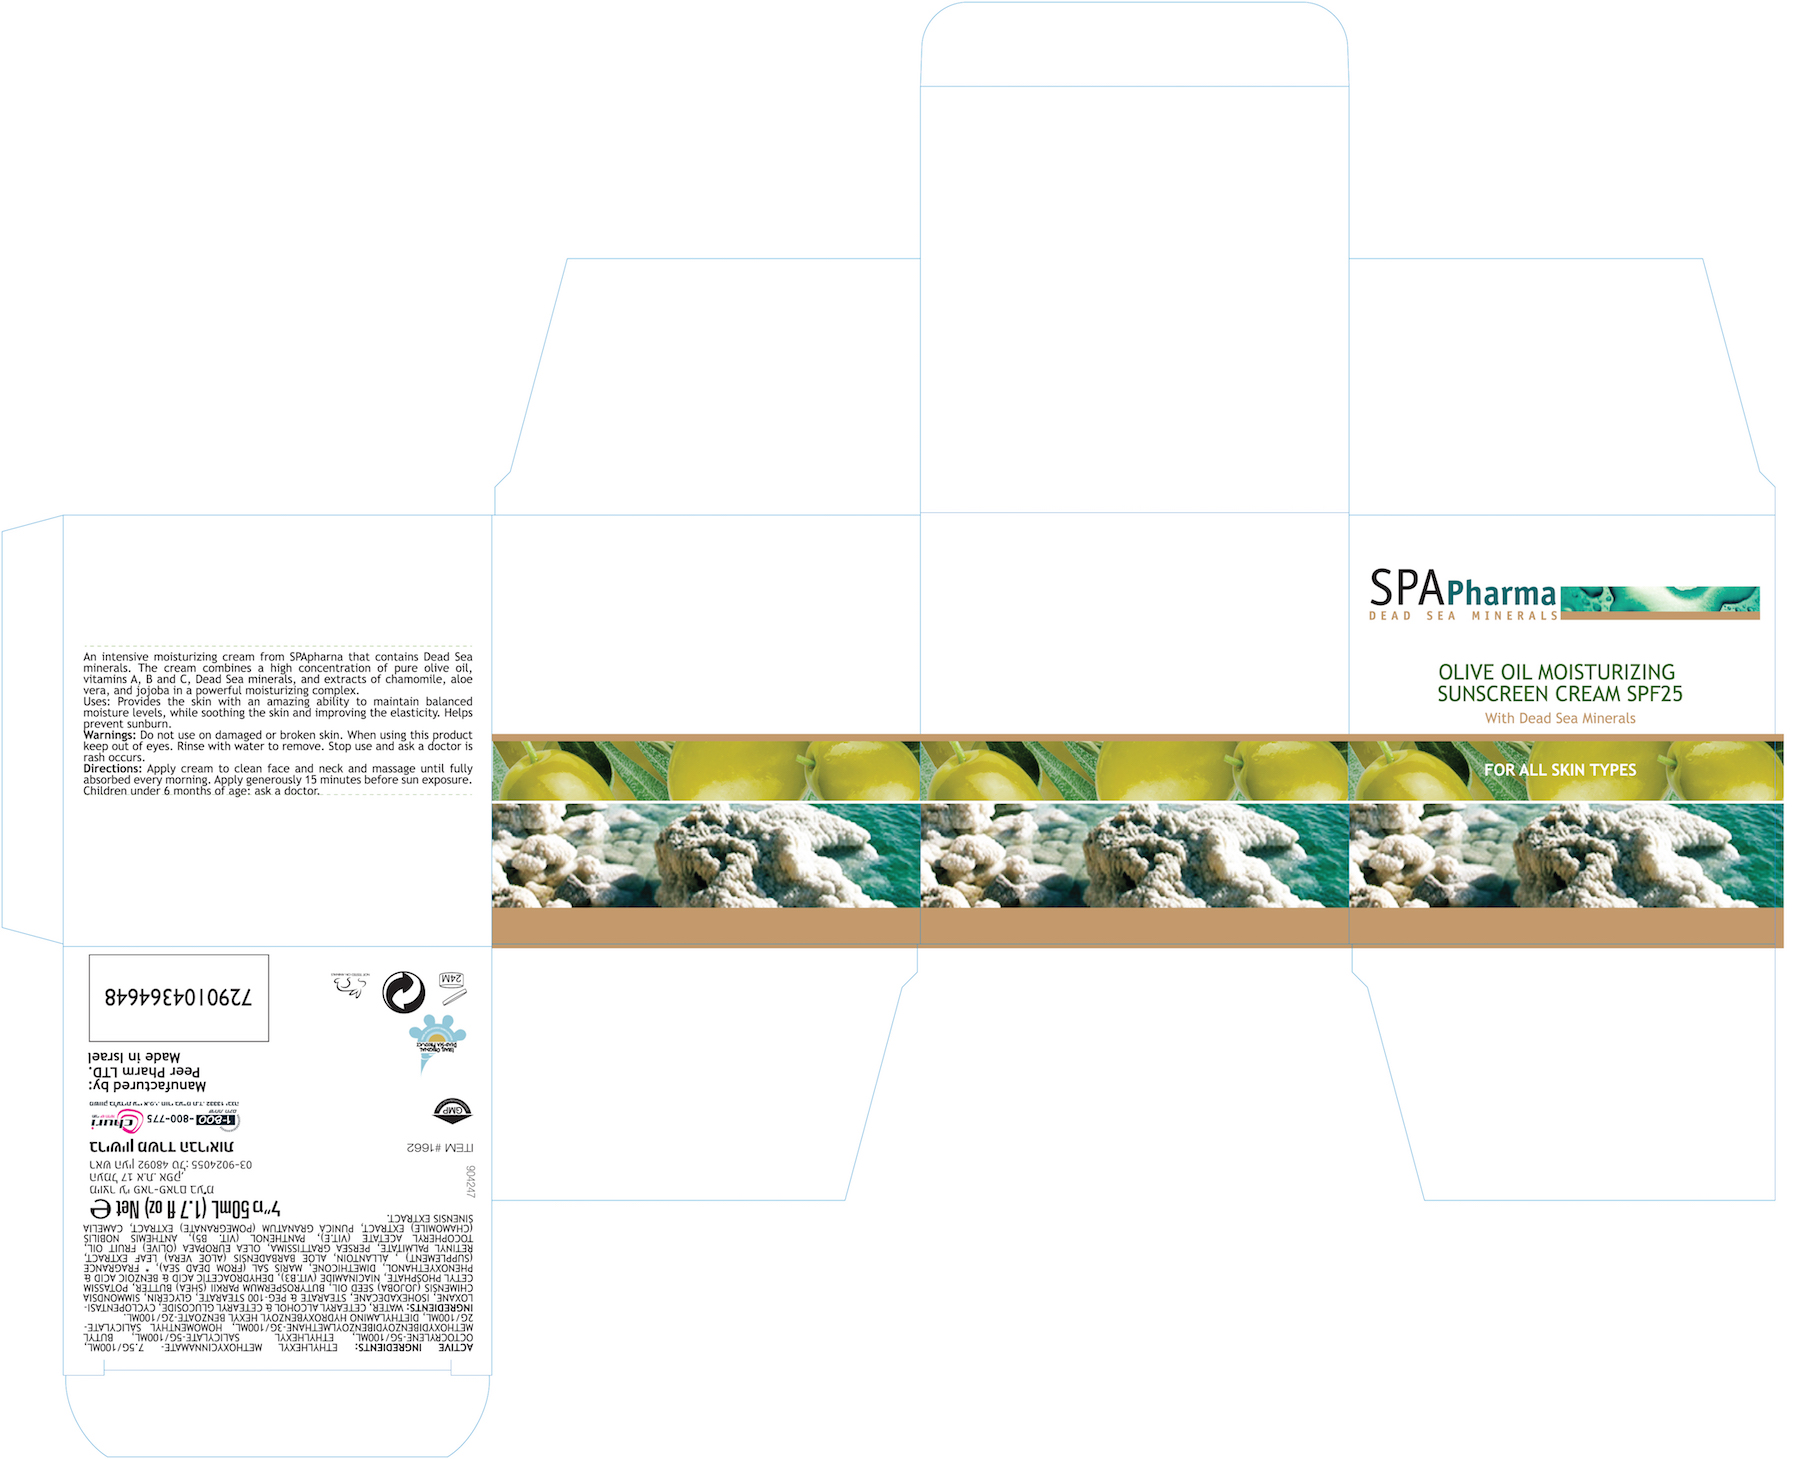 Spa Pharma Olive Oil Moisturizing Cream SPF25